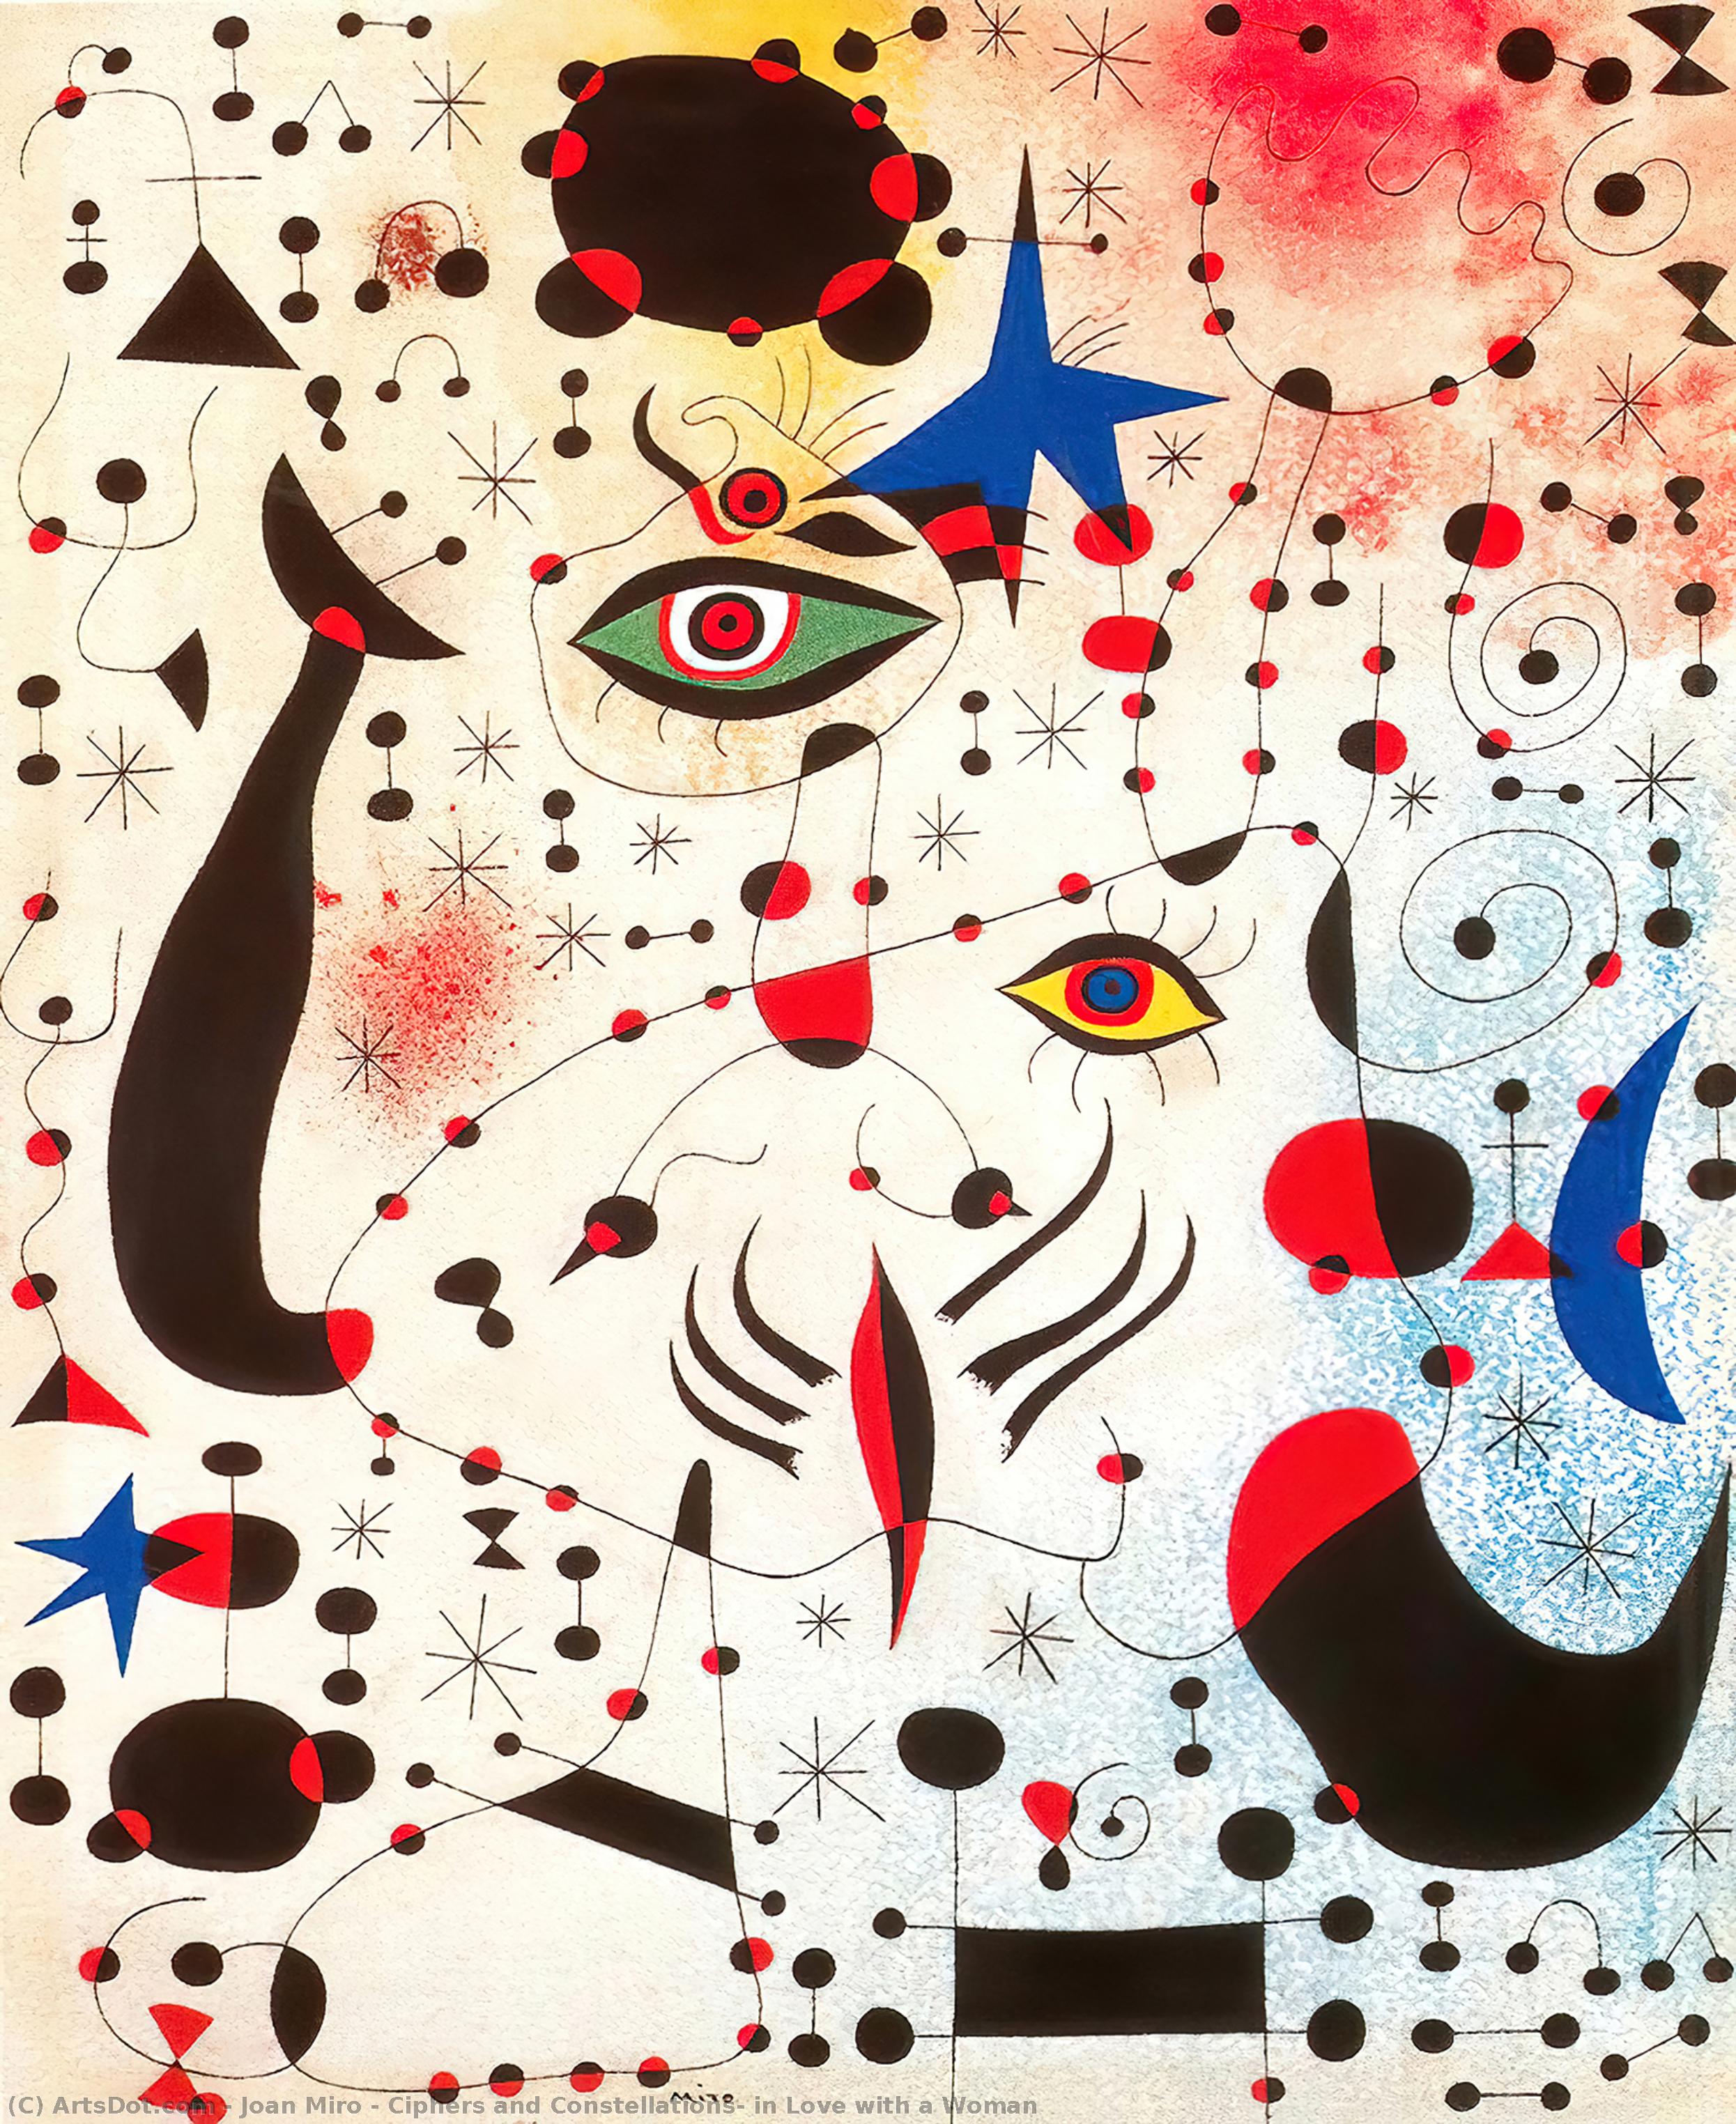 Получить Качественные Печати В Музеях Ciphers and Constellations, in Love with a Woman, 1941 по Joan Miró (Вдохновлен) (1893-1983, Spain) | ArtsDot.com